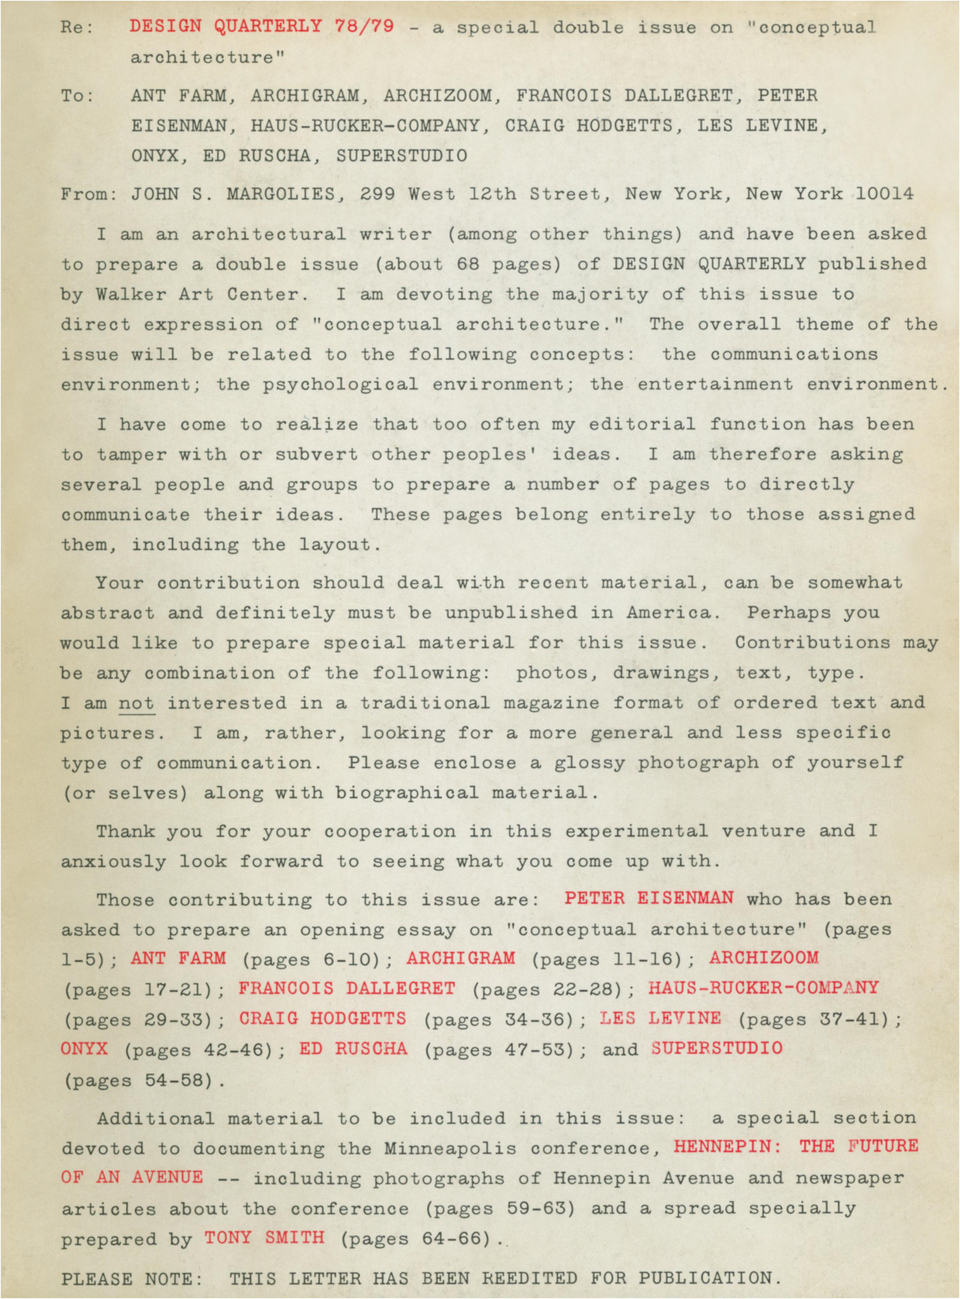 Design Quarterly, 78/79, Conceptual Architecture (1970)